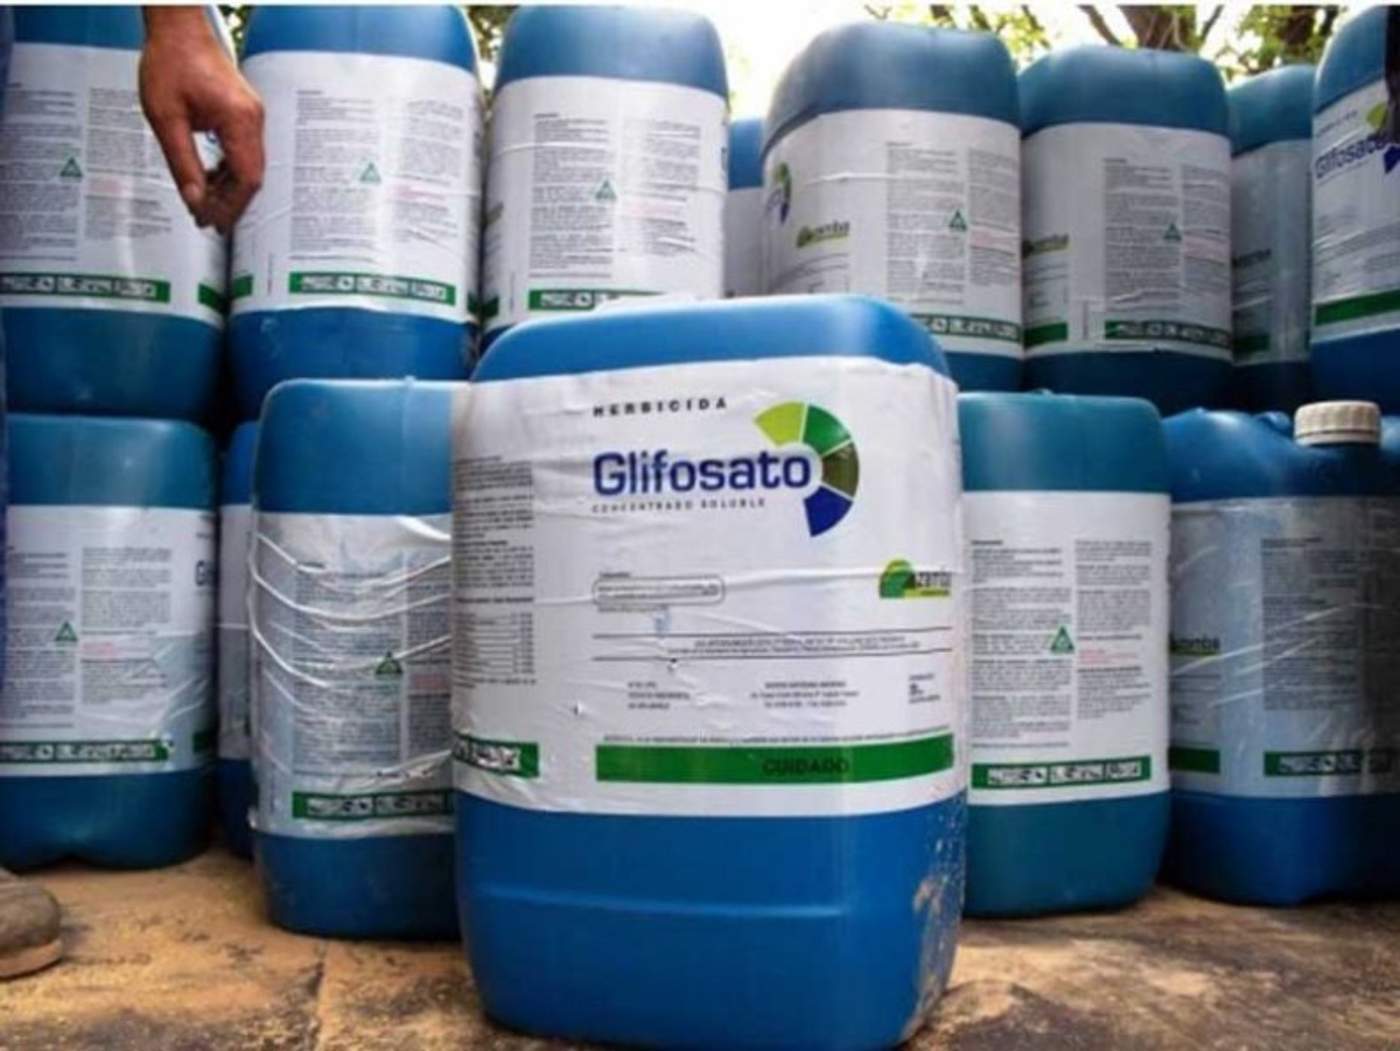 El glifosato, utilizado como herbicida y el cual, según un grupo de científicos tiene relación con el desarrollo de cáncer en humanos, no es considerado de alta peligrosidad en México, advirtió María Colín, promotora legal de Greenpace México. (TWITTER)